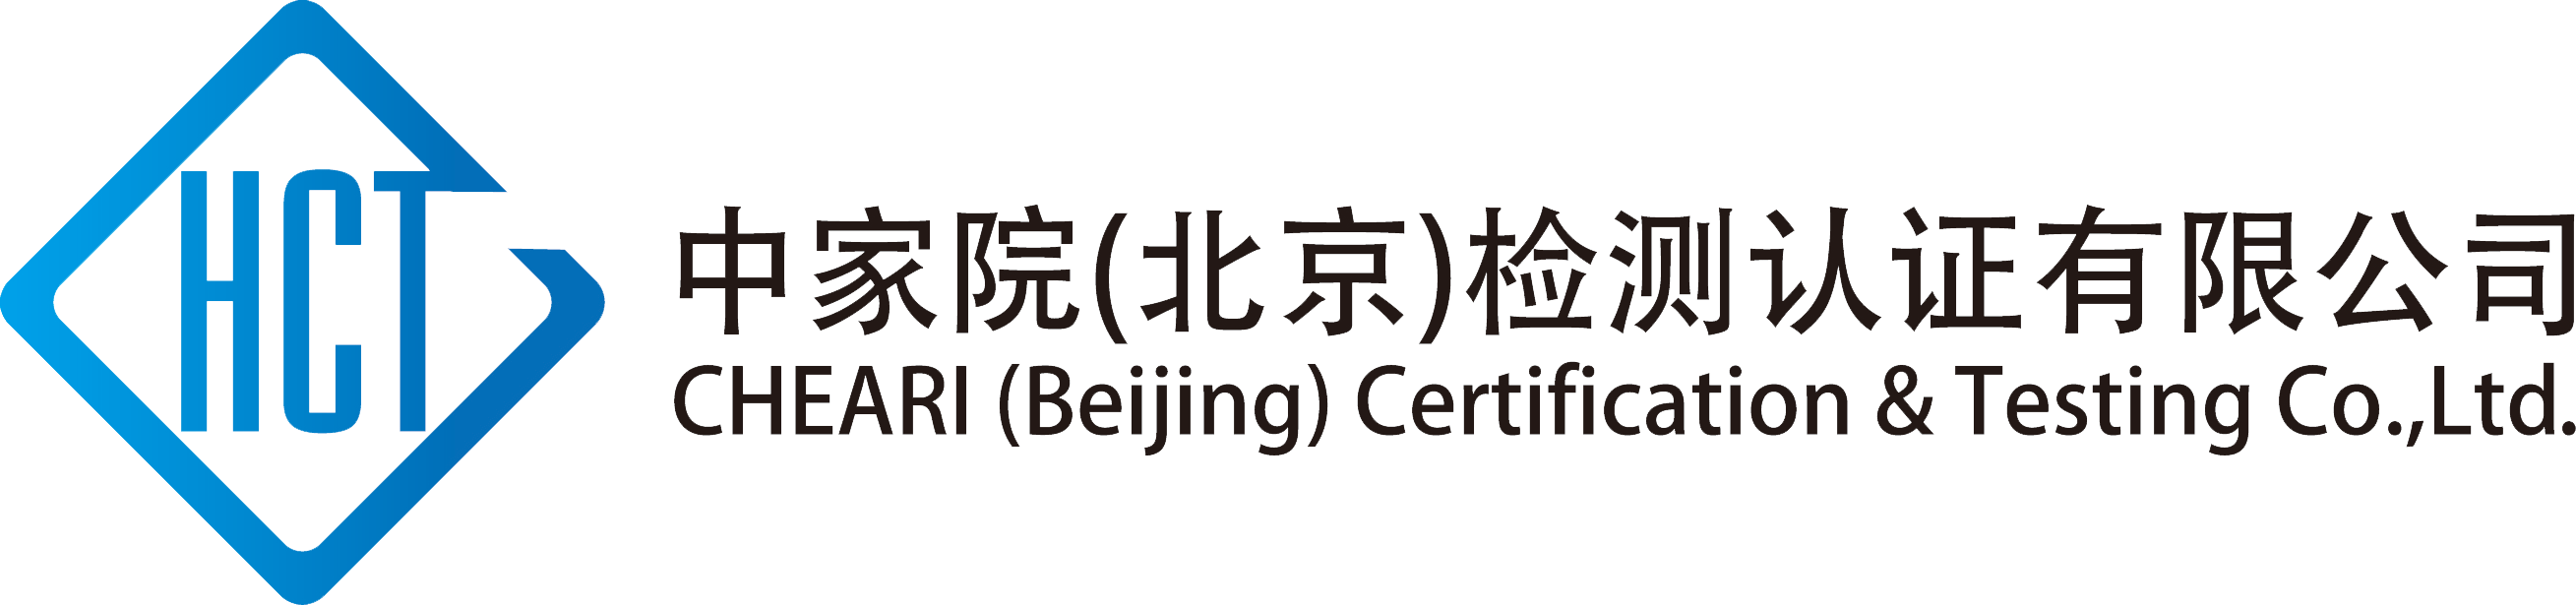 中家院(北京)检测认证有限公司